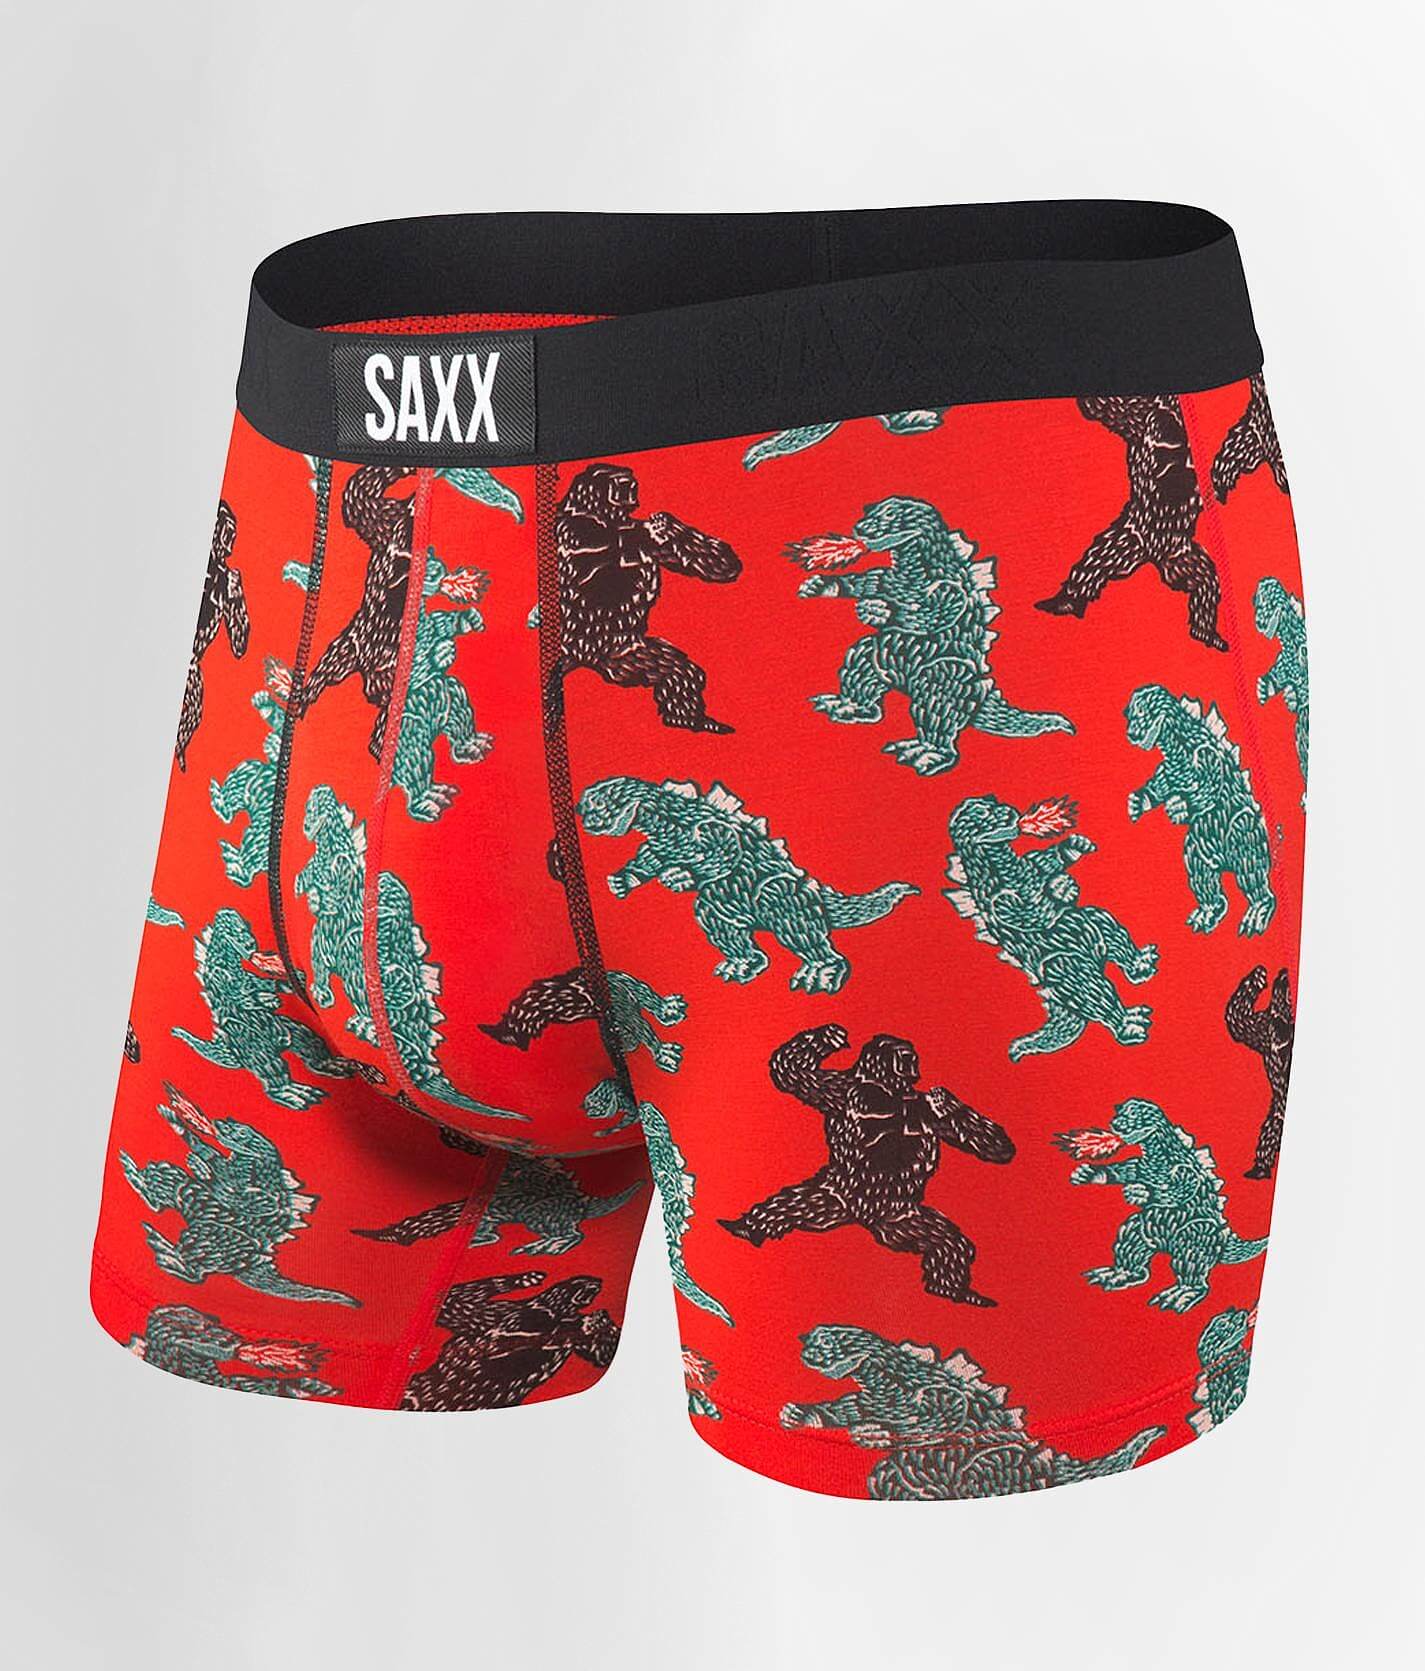 SAXX Vibe Stretch Boxer Briefs - Men's Boxers in Red Kingzilla | Buckle